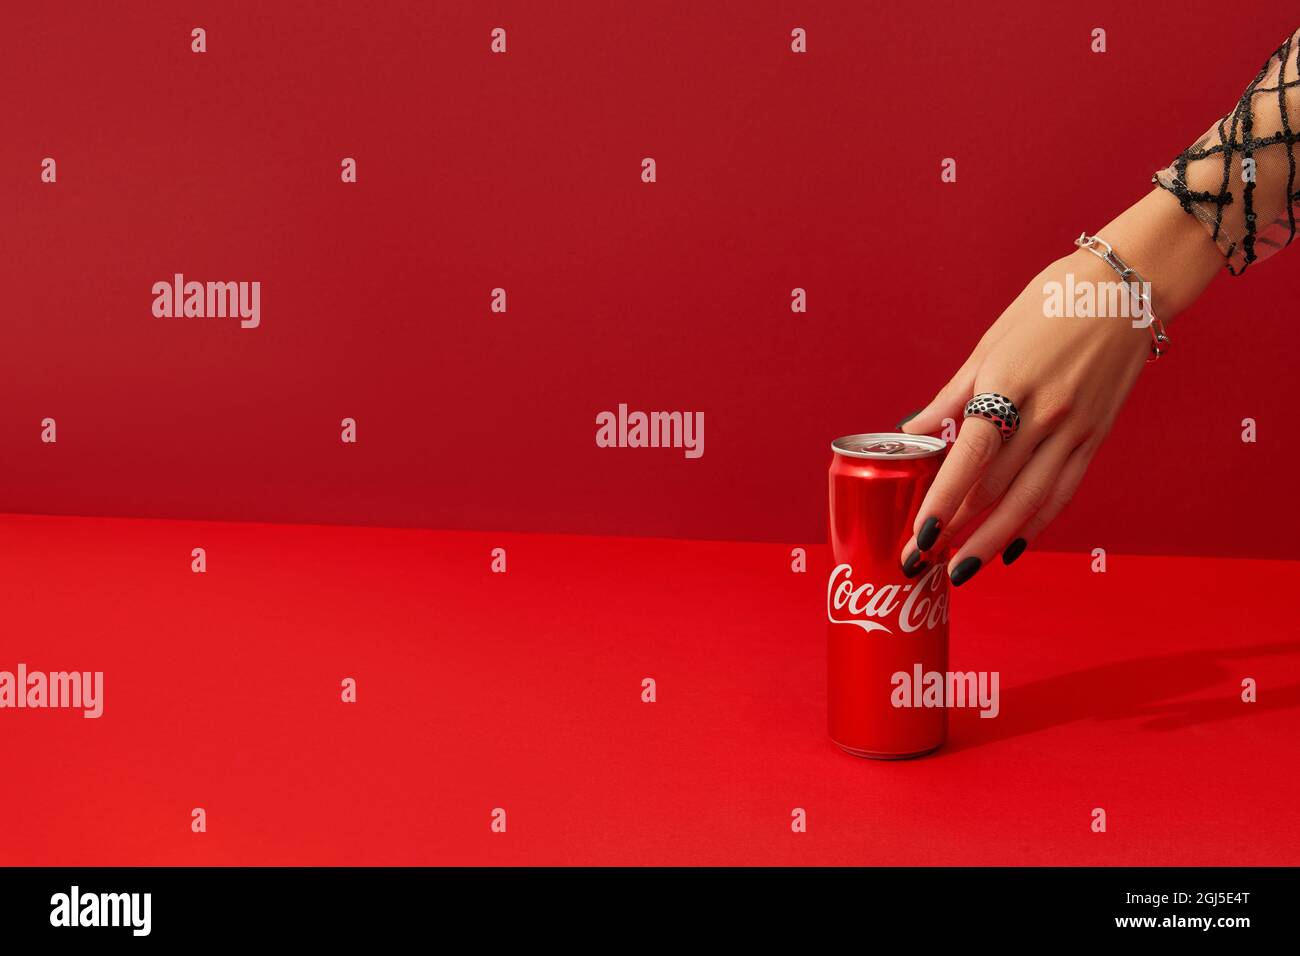 Ukraine, Kiev 6 août 2021, main de Womans avec la conception d'ongle effrayante prend CAN de boisson Coca cola sur fond rouge. Banque D'Images